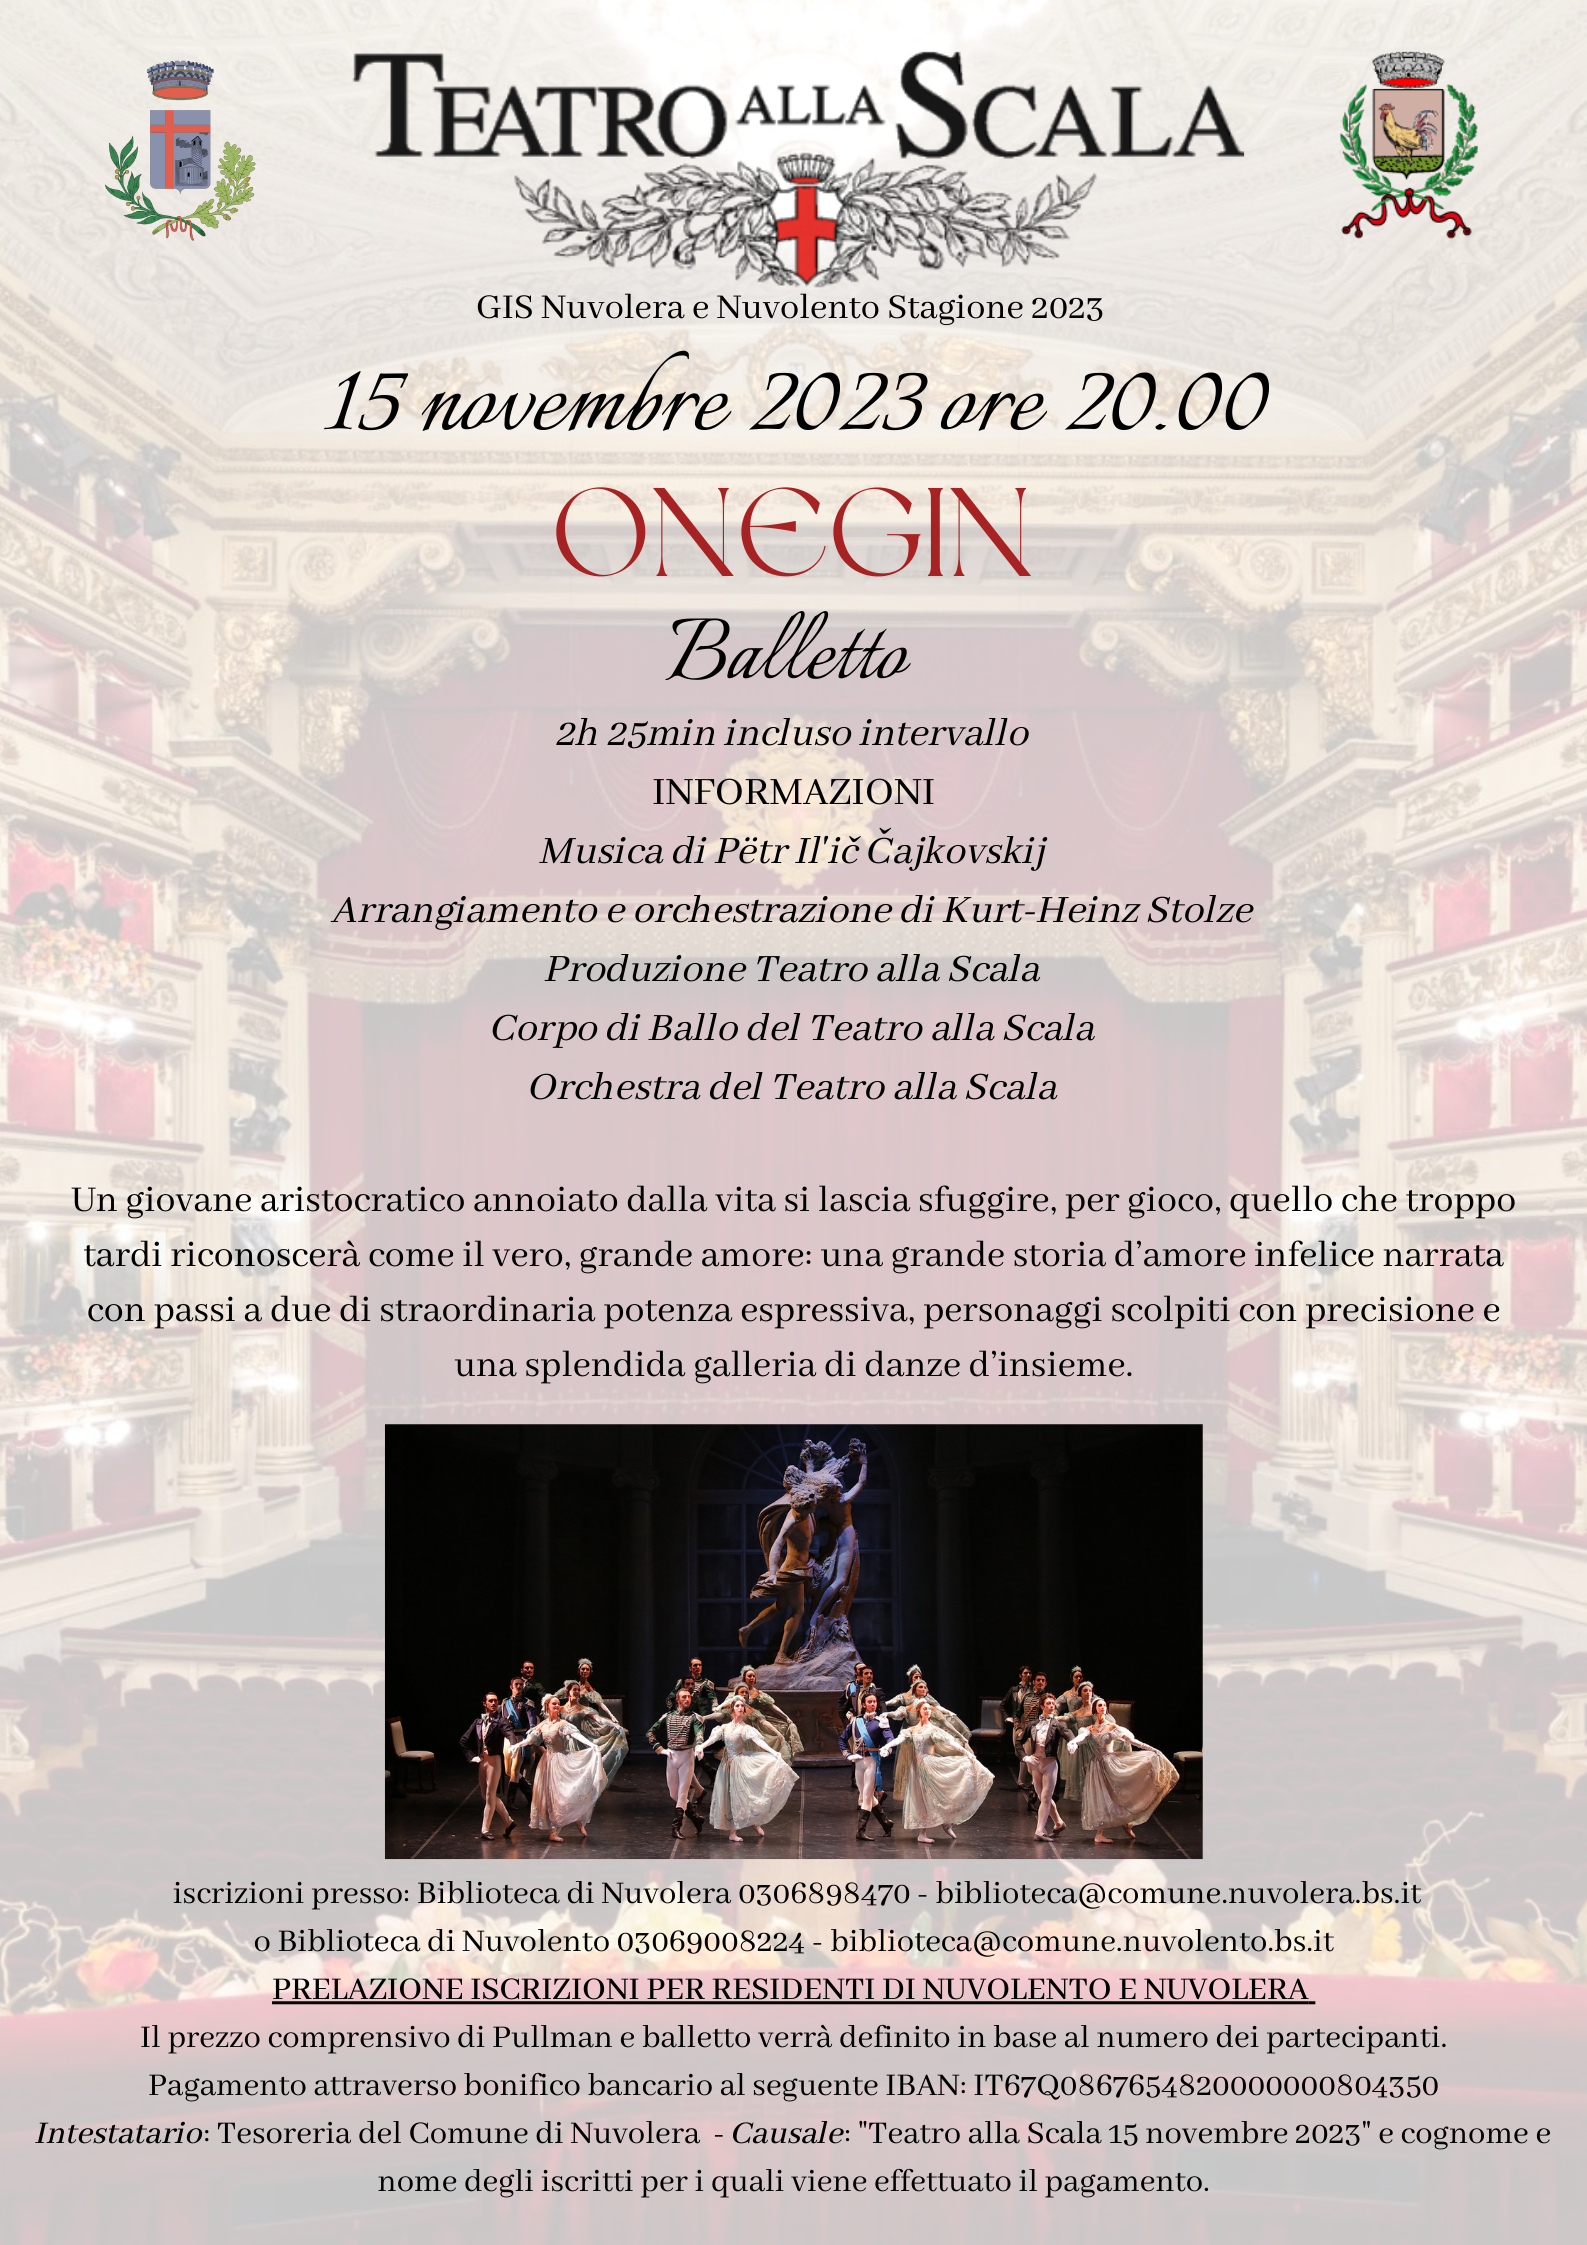 ONEGIN Balletto 15 novembre Teatro Alla Scala